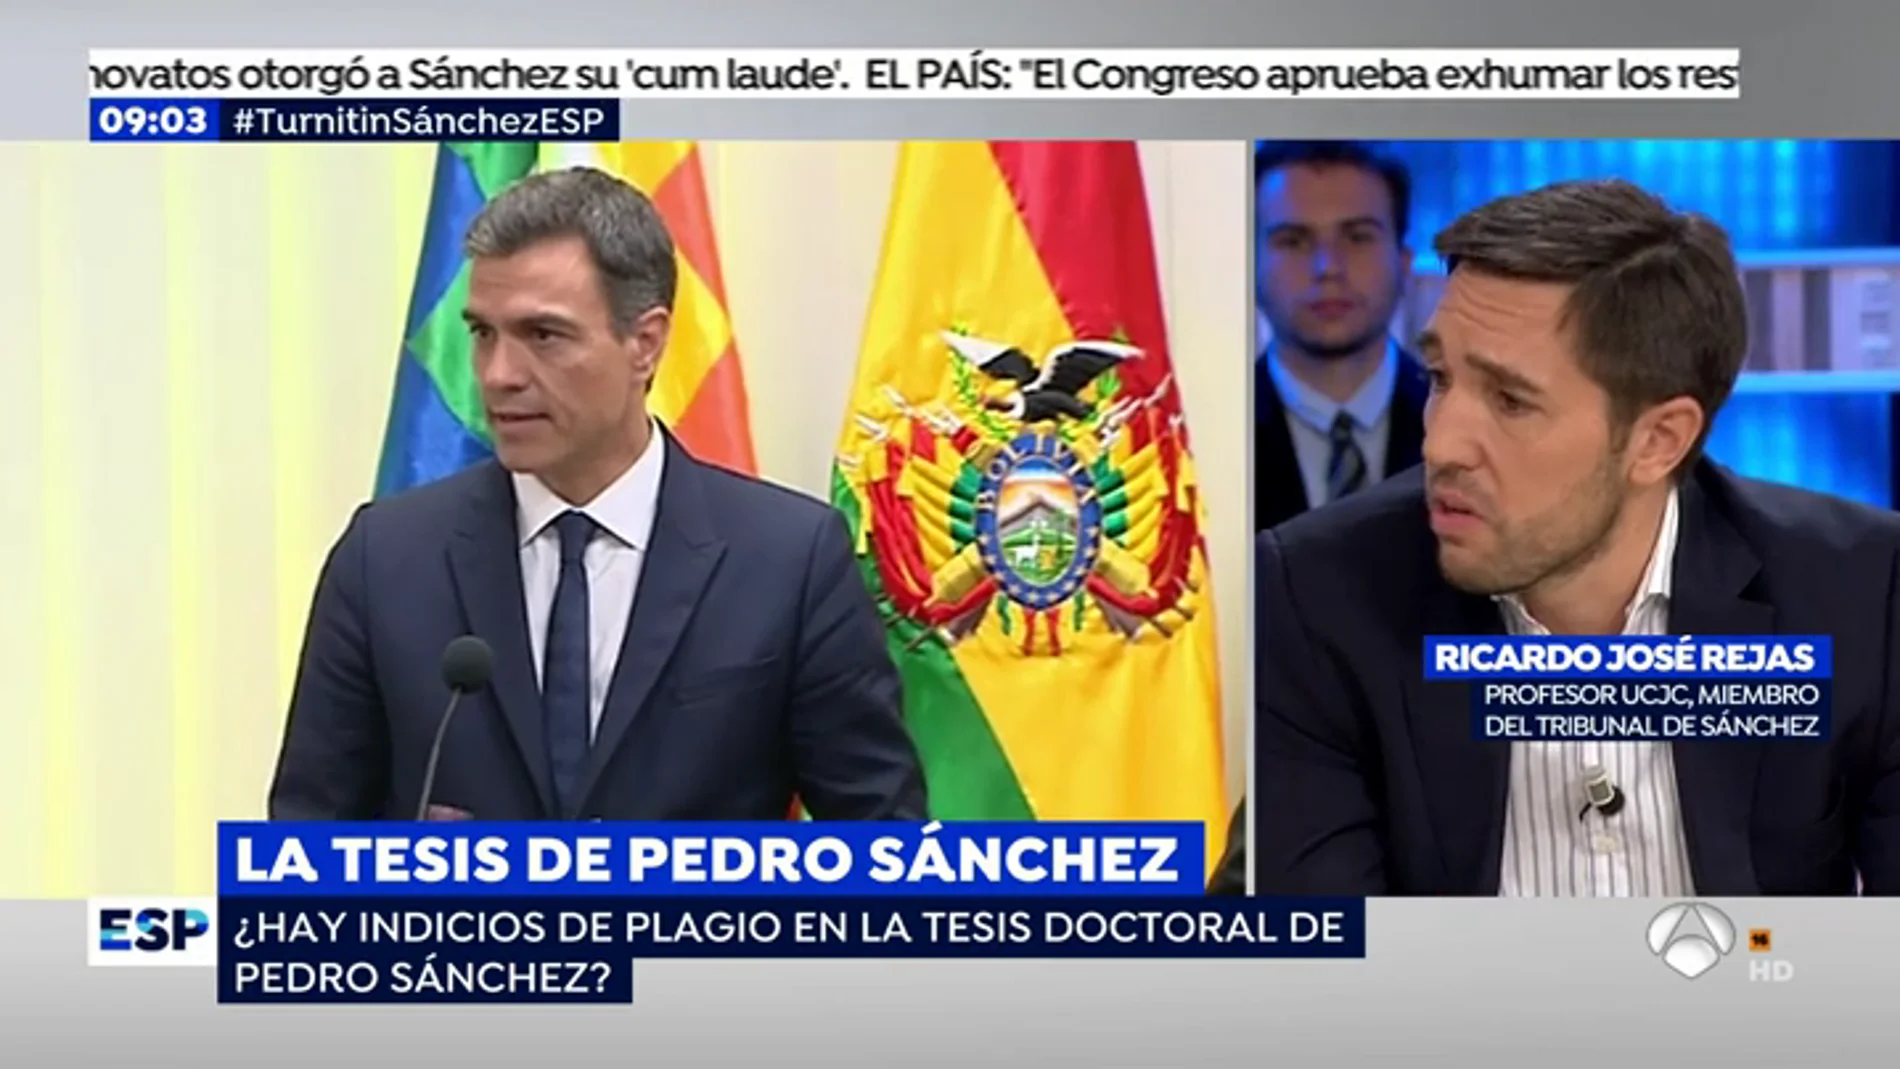 Un miembro del tribunal que aprobó la tesis de Pedro Sánchez: "Siempre existe la posibilidad de que se te pase un plagio"